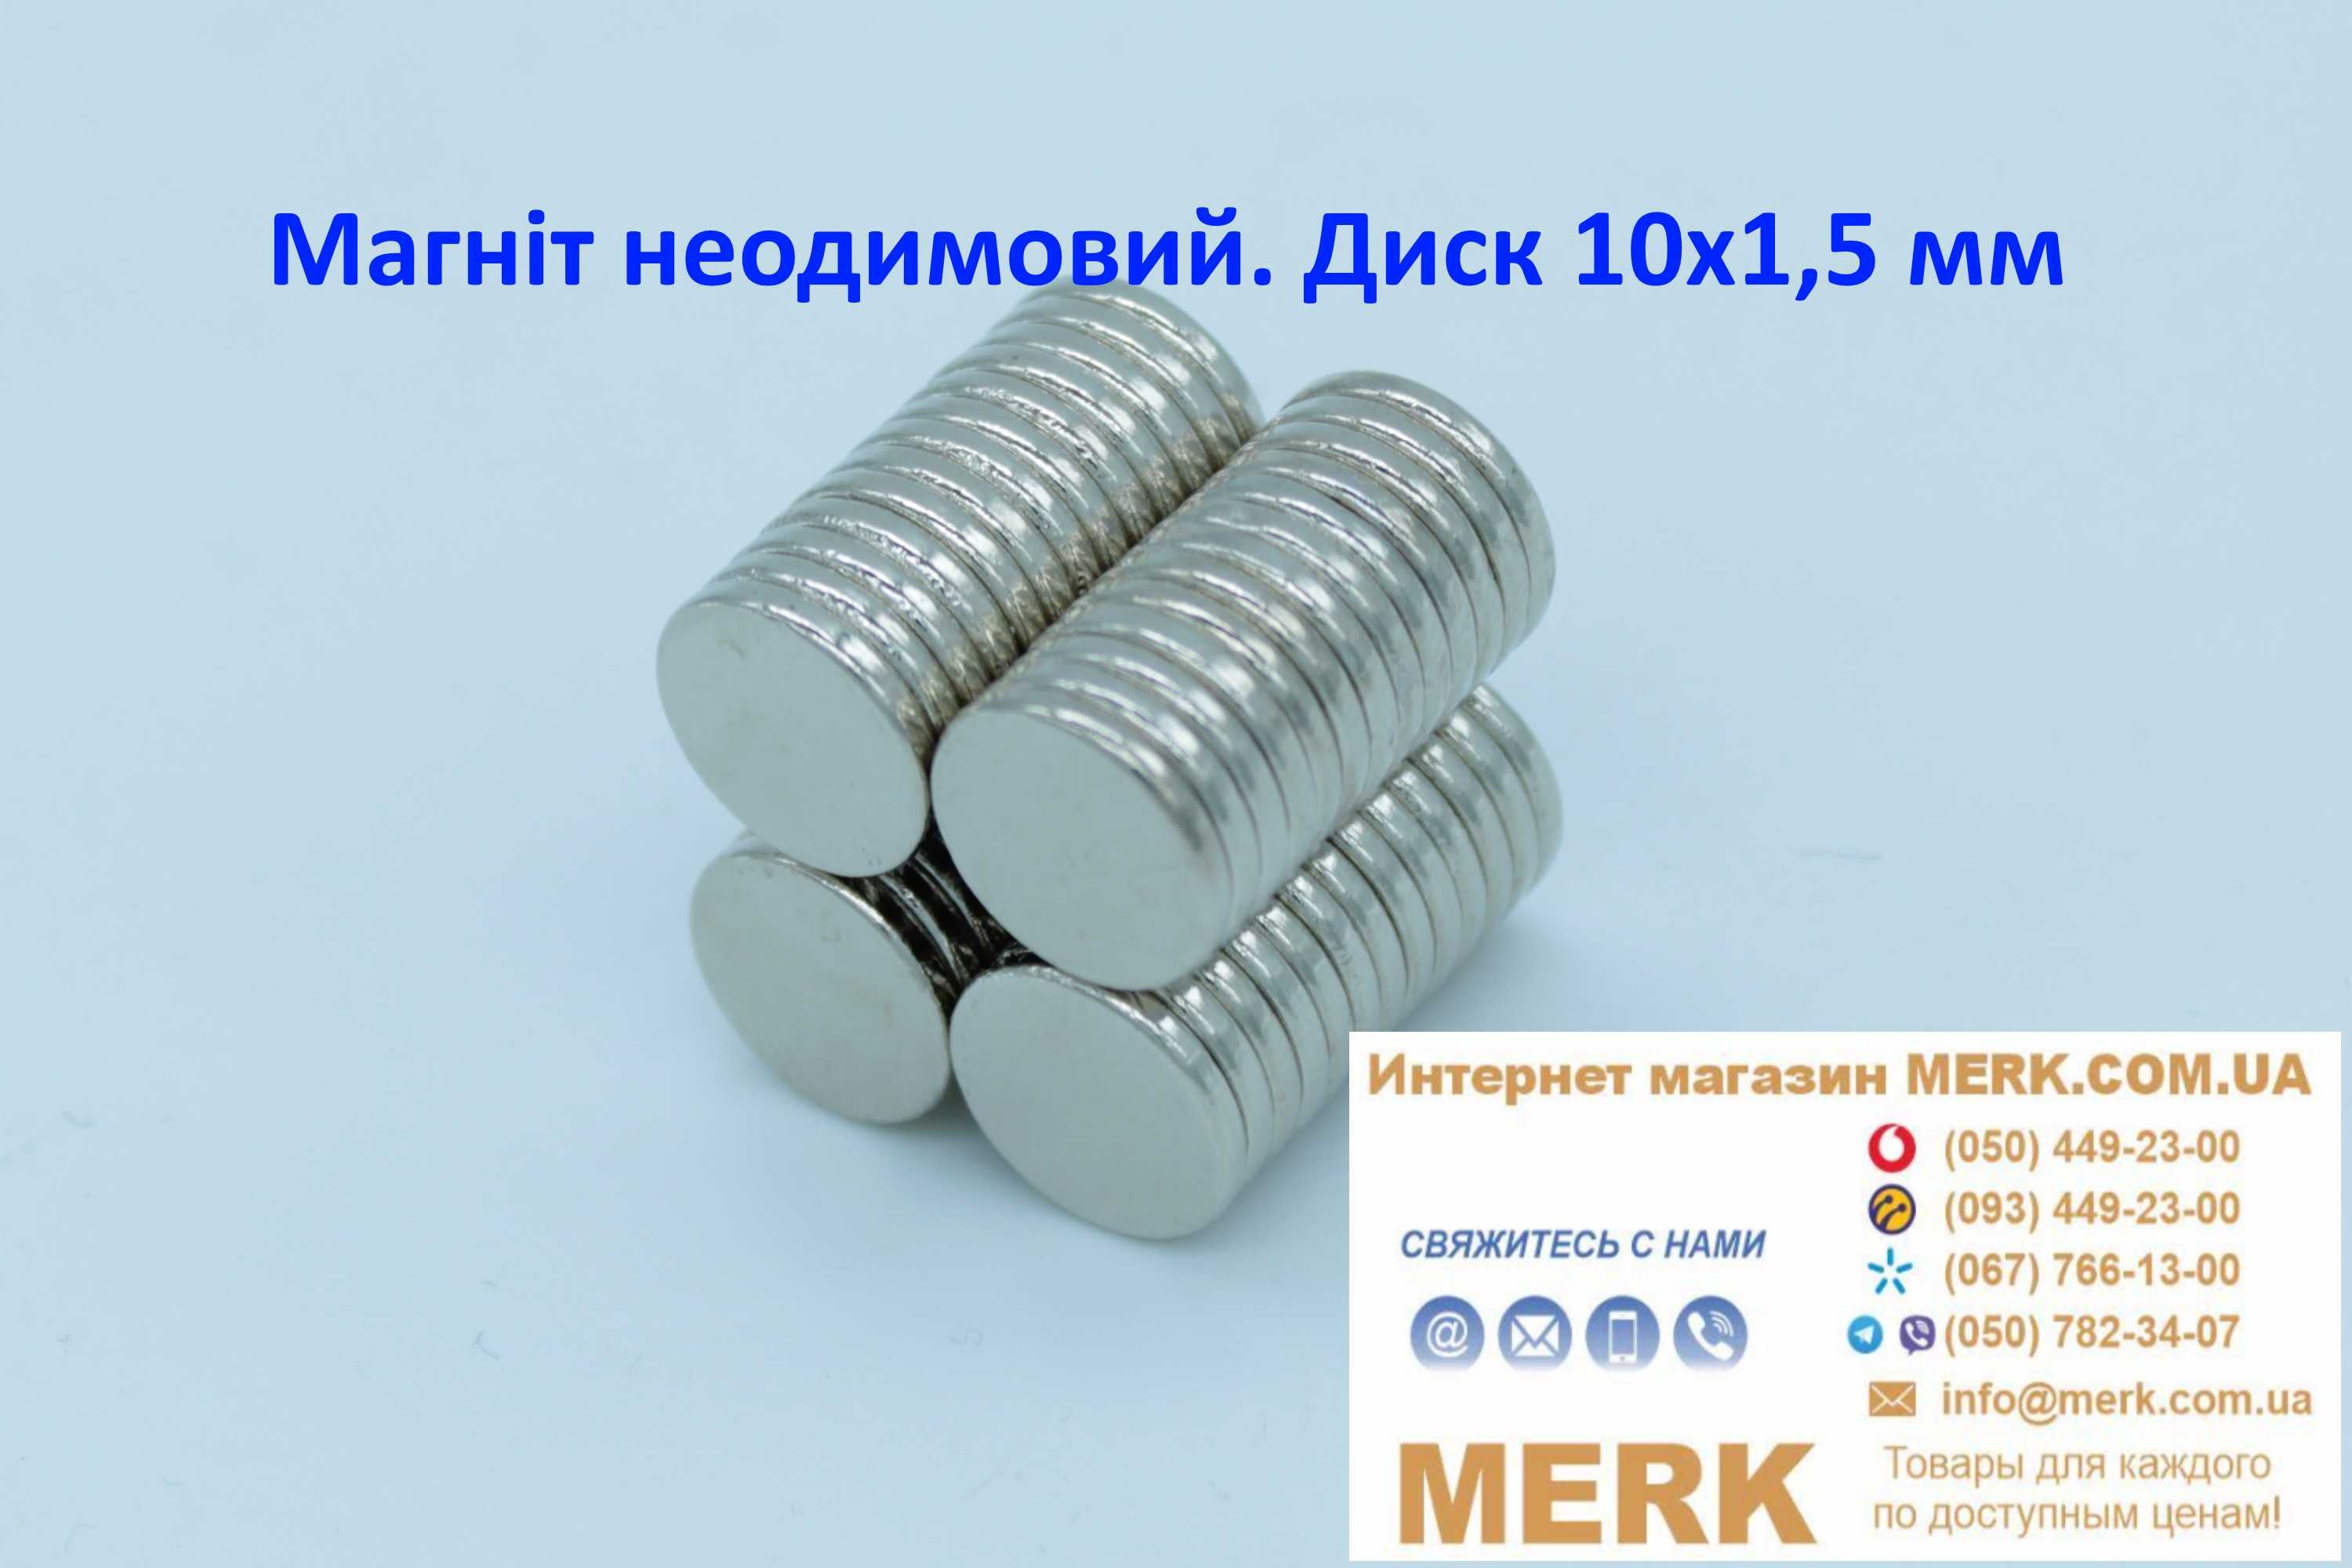 Неодимовые магниты/магніти диск 10х1,5мм D H 2 3 4 6 8 10 15 20 25